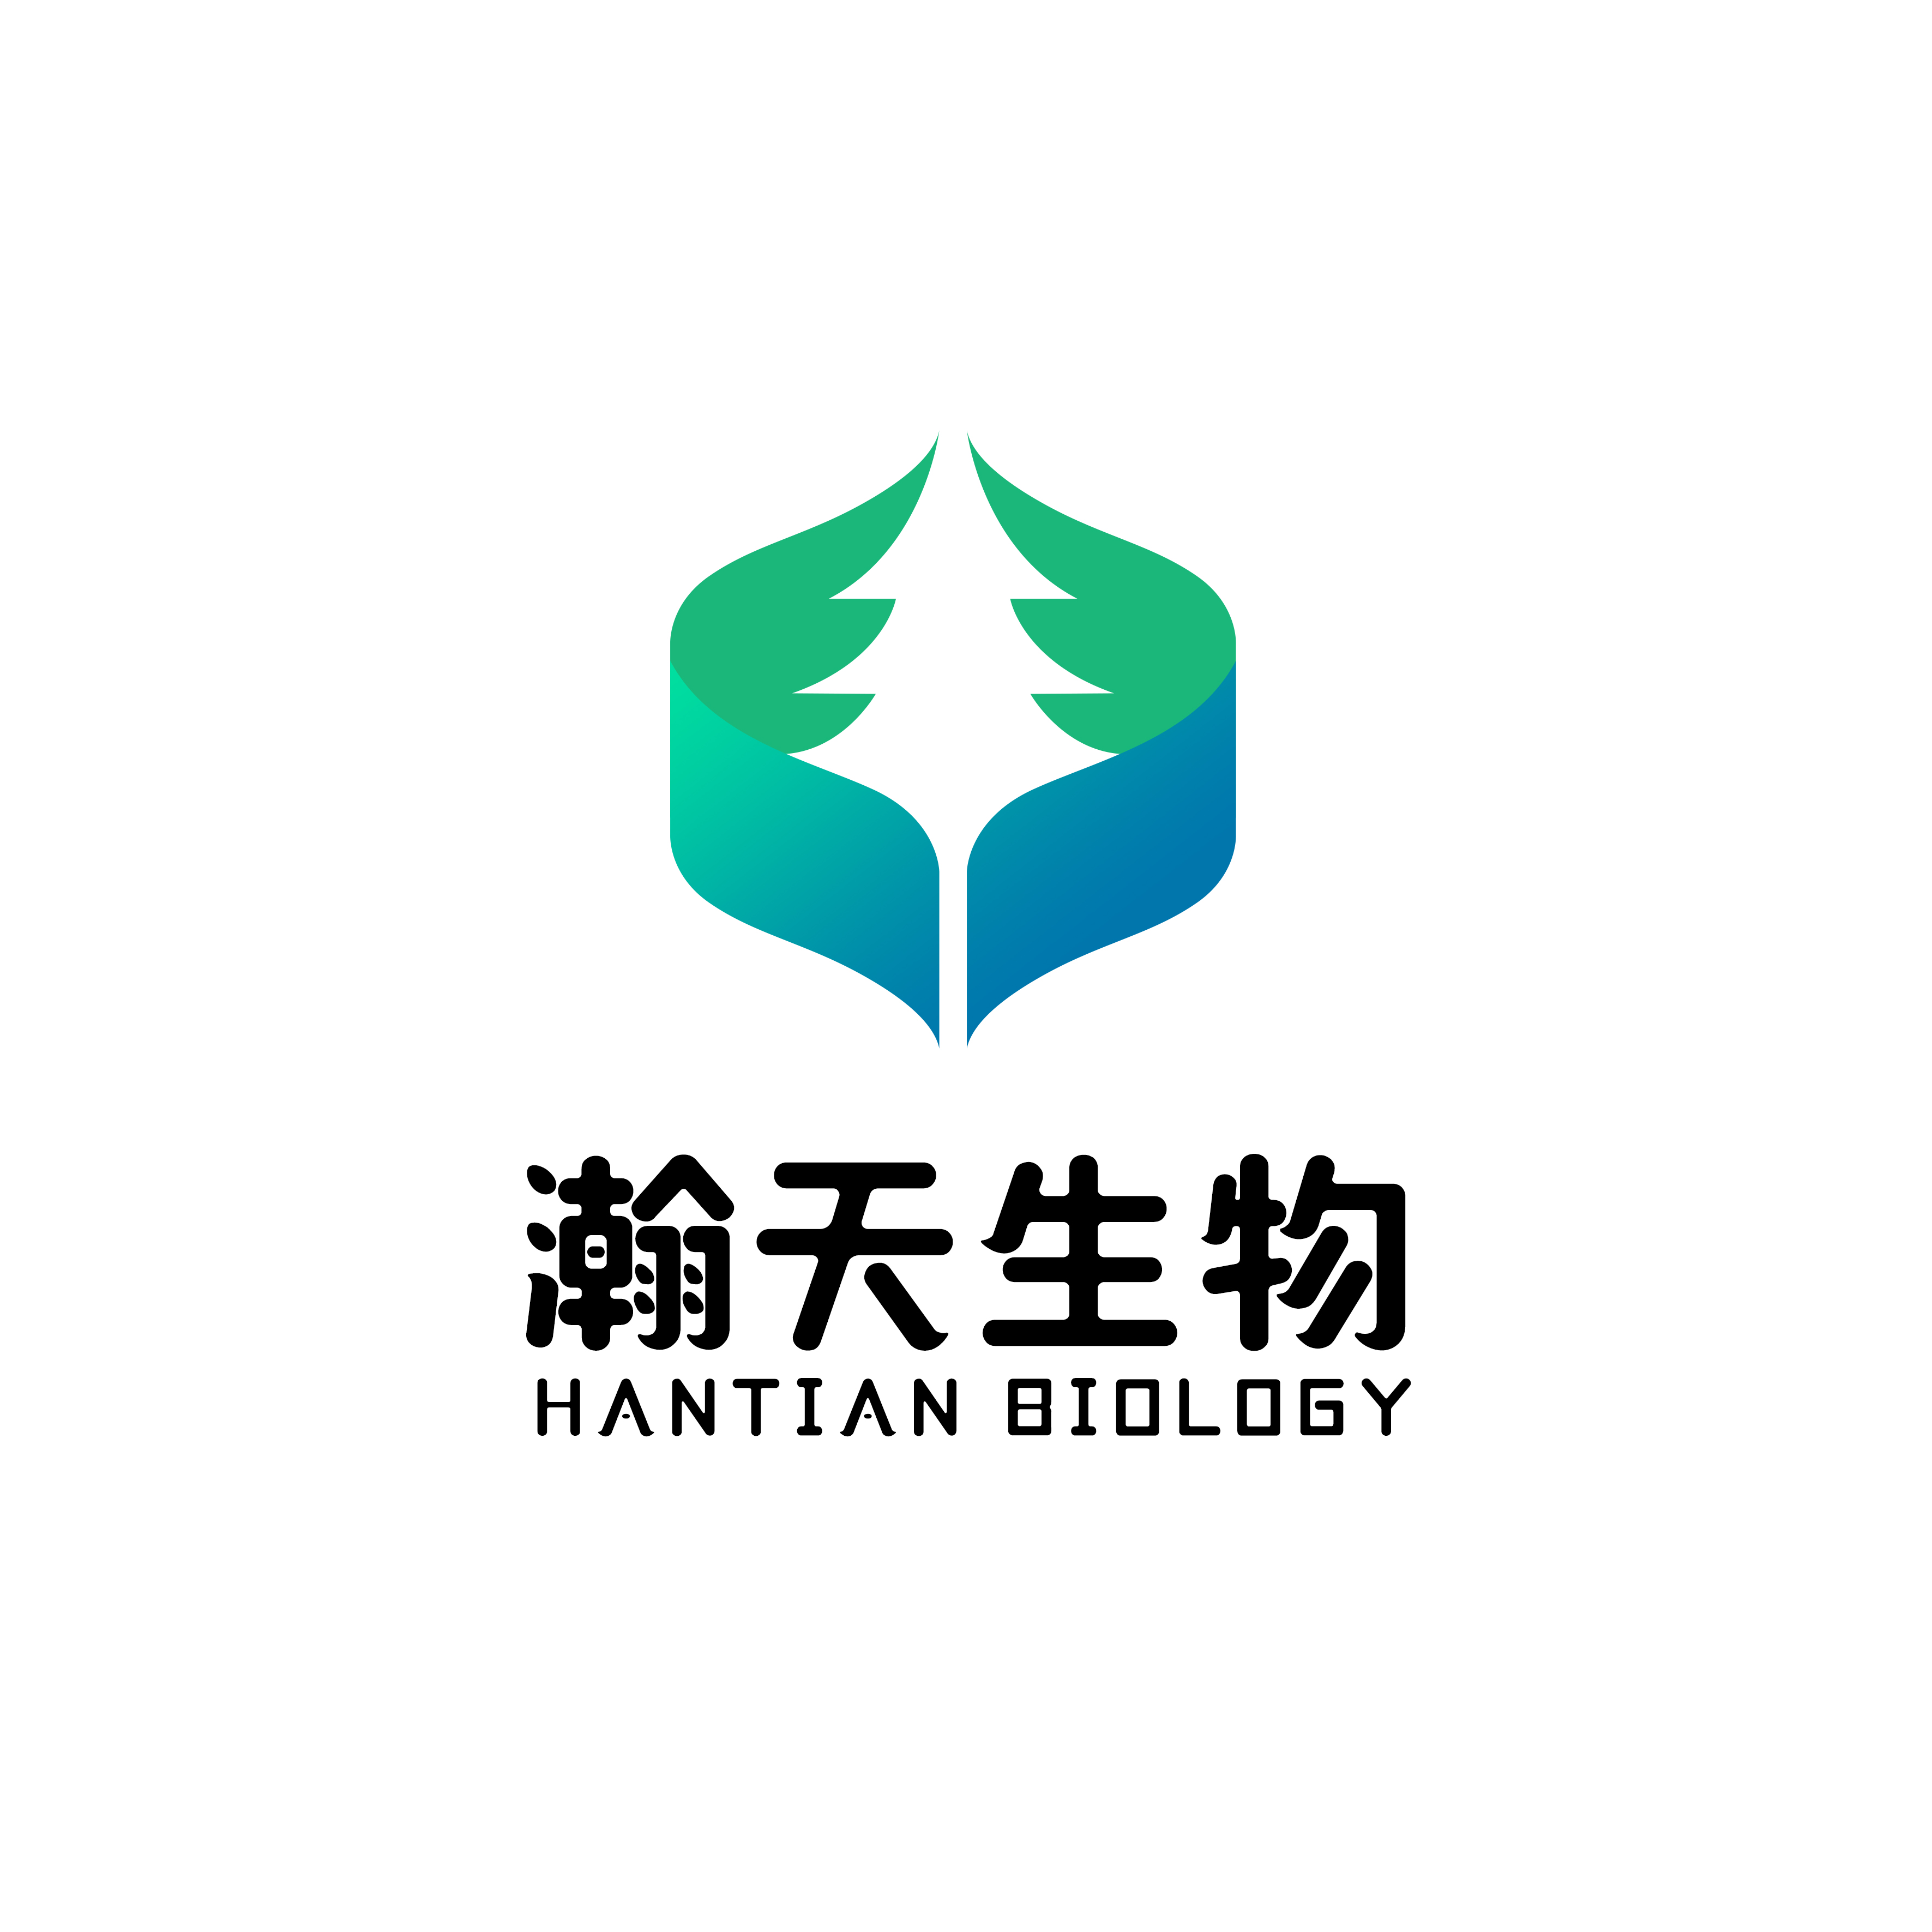 Distributor_Guangzhou Sunton Biotechnology Co., Ltd.